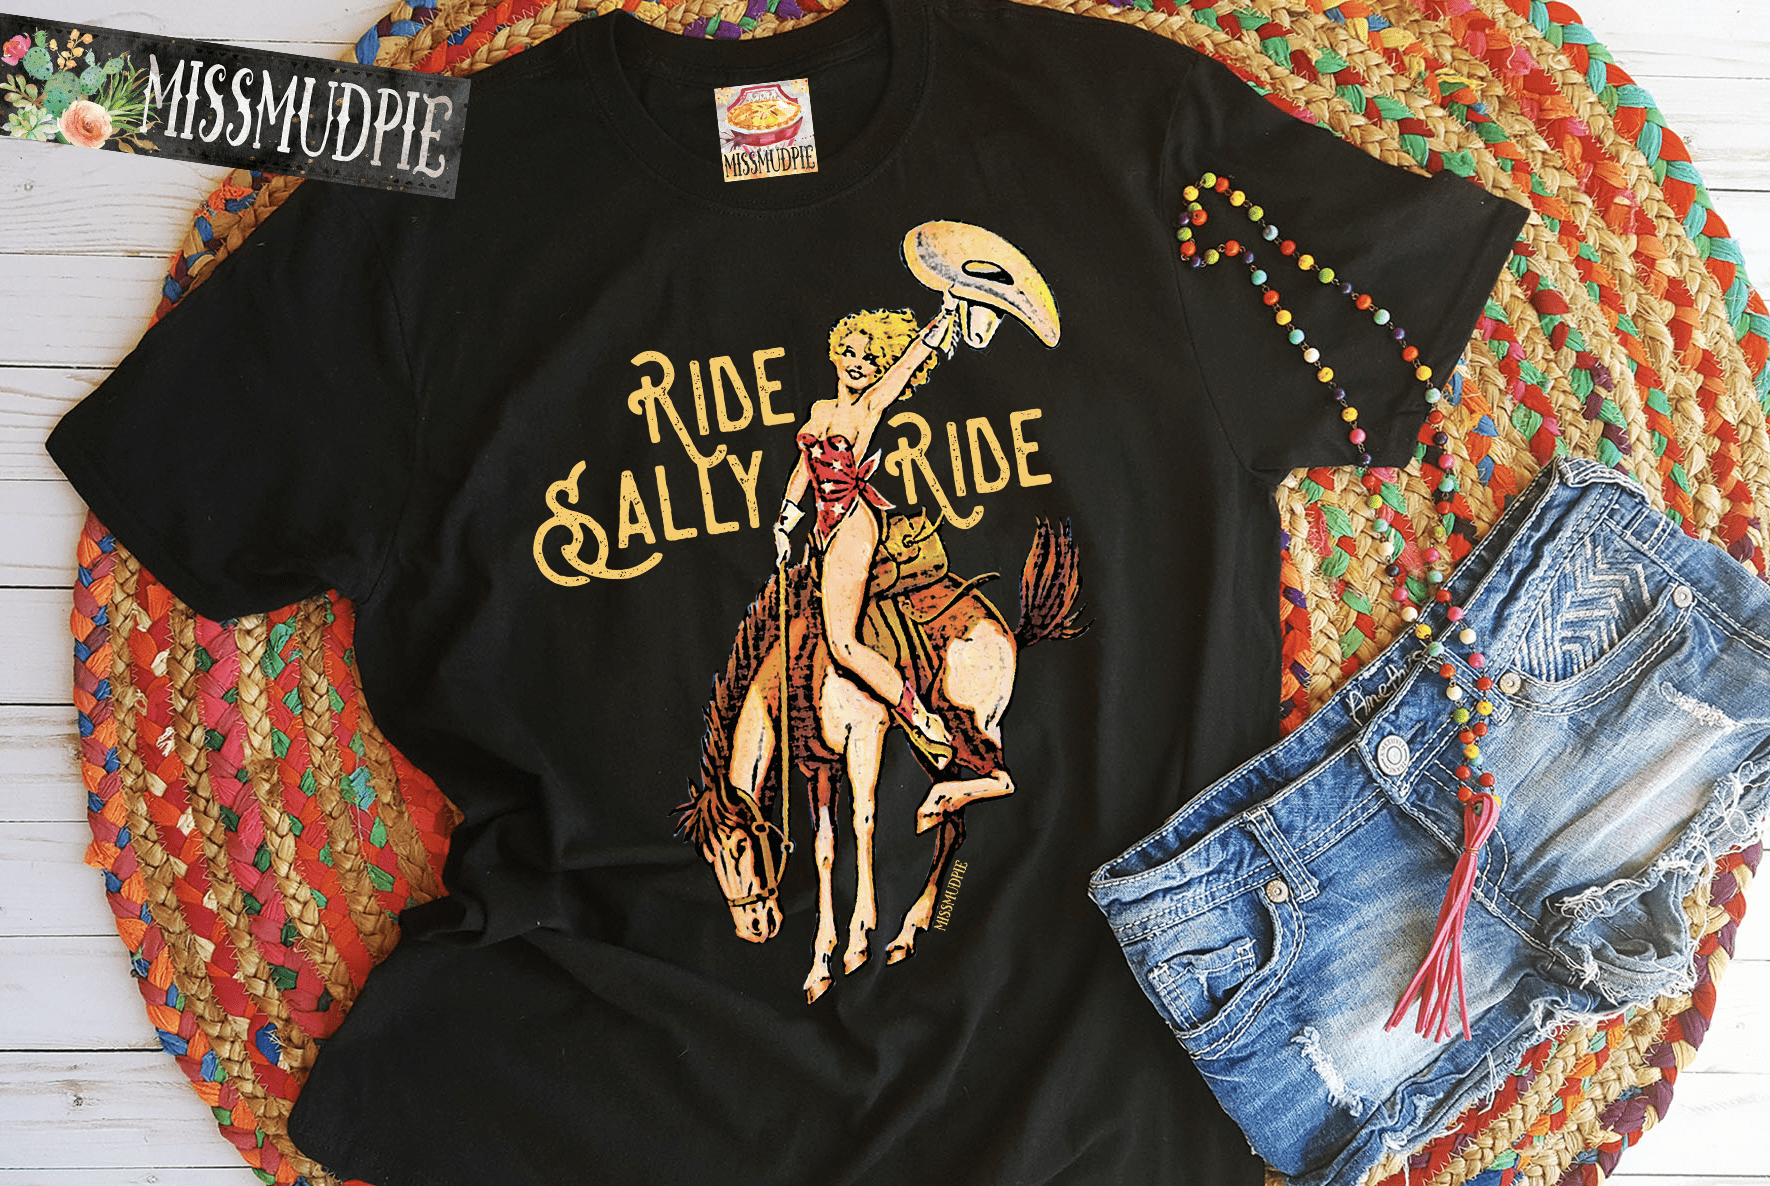 Ride Sally Ride Tee -  -  - Baha Ranch Western Wear